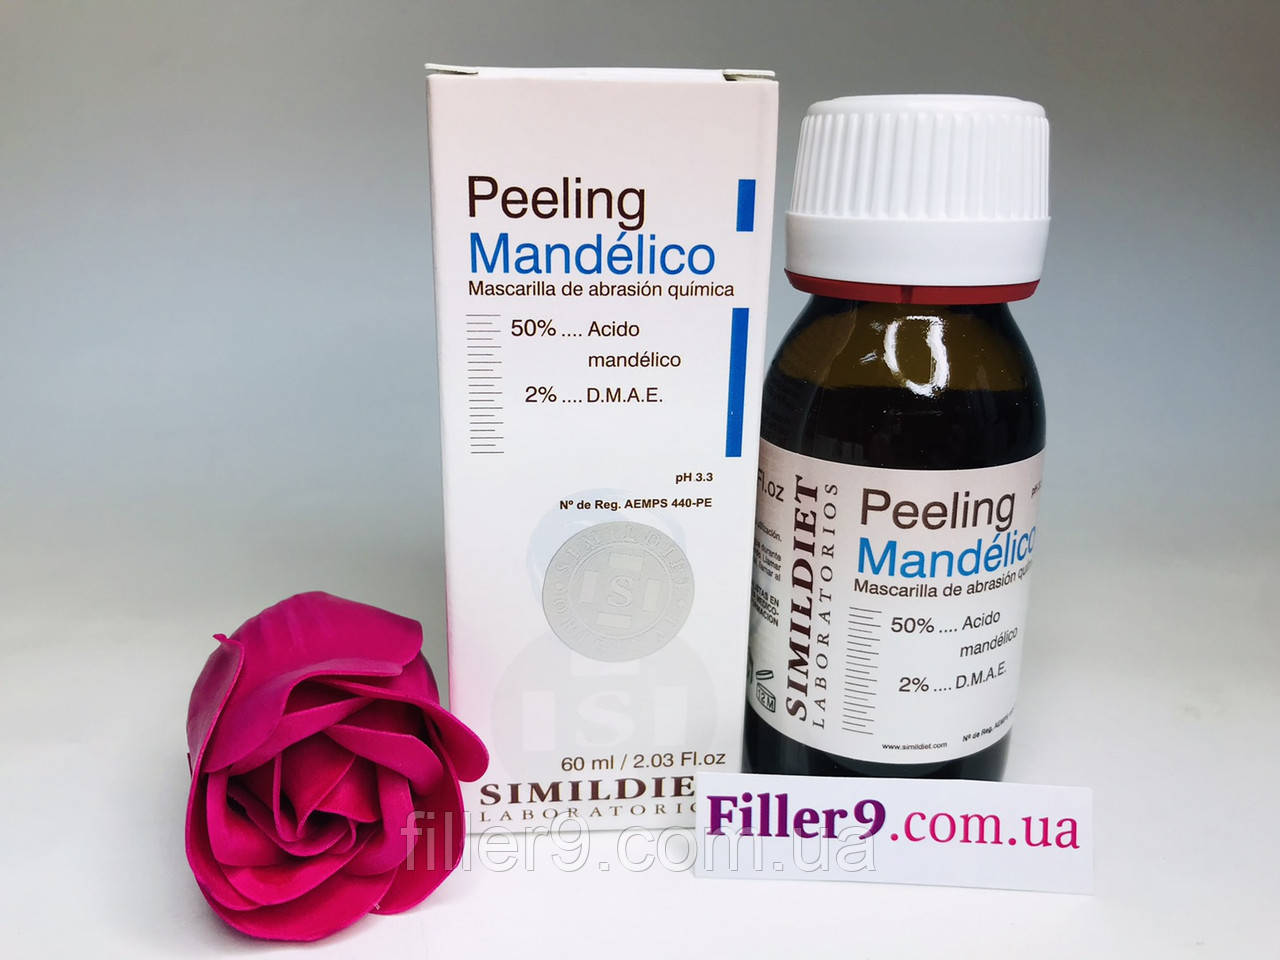 Simildiet Mandelico Peeling (Манделіко Пілінг) Мигдальний пілінг із ліфтинговим ефектом, 60 мл